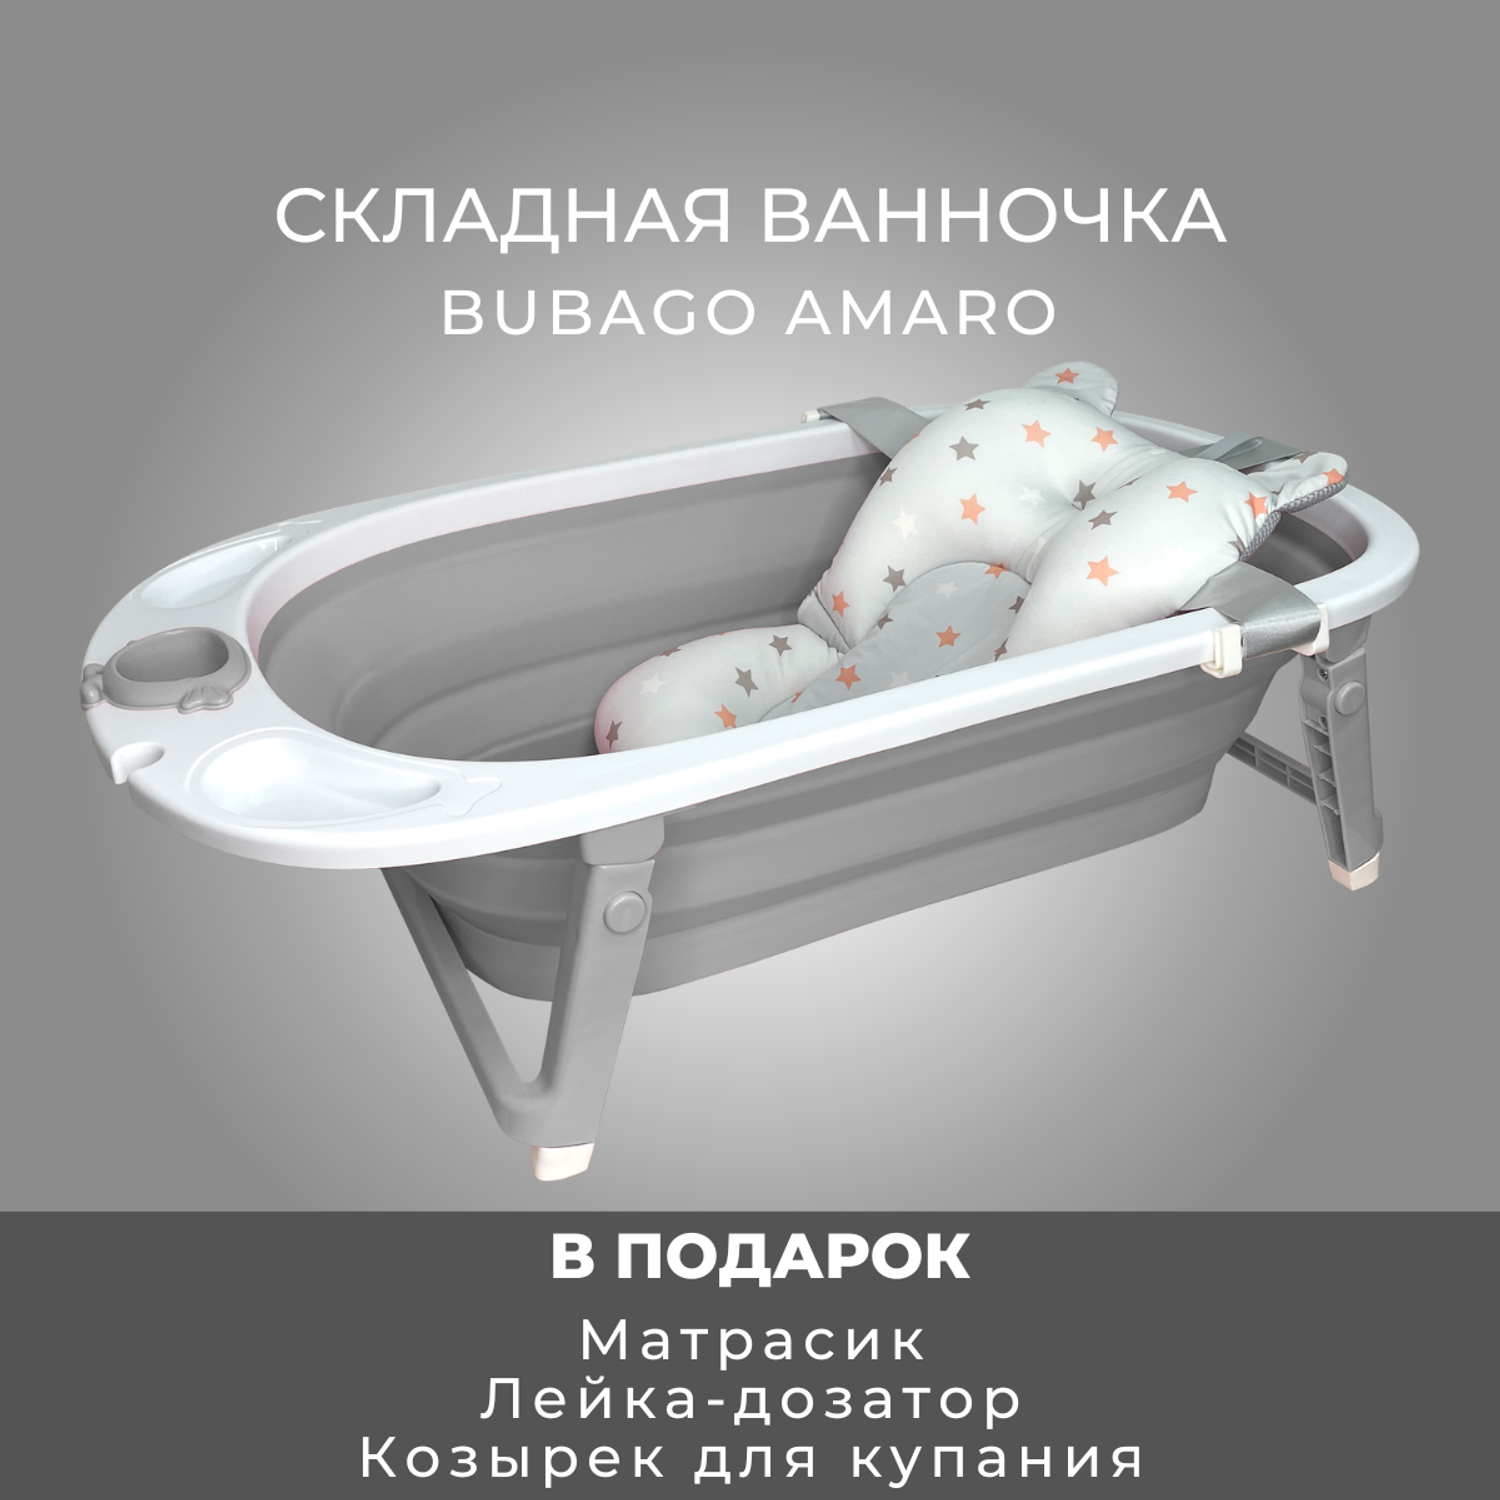 Ванночка детская складная Bubago Amaro с матрасиком для новорожденных - фото 2